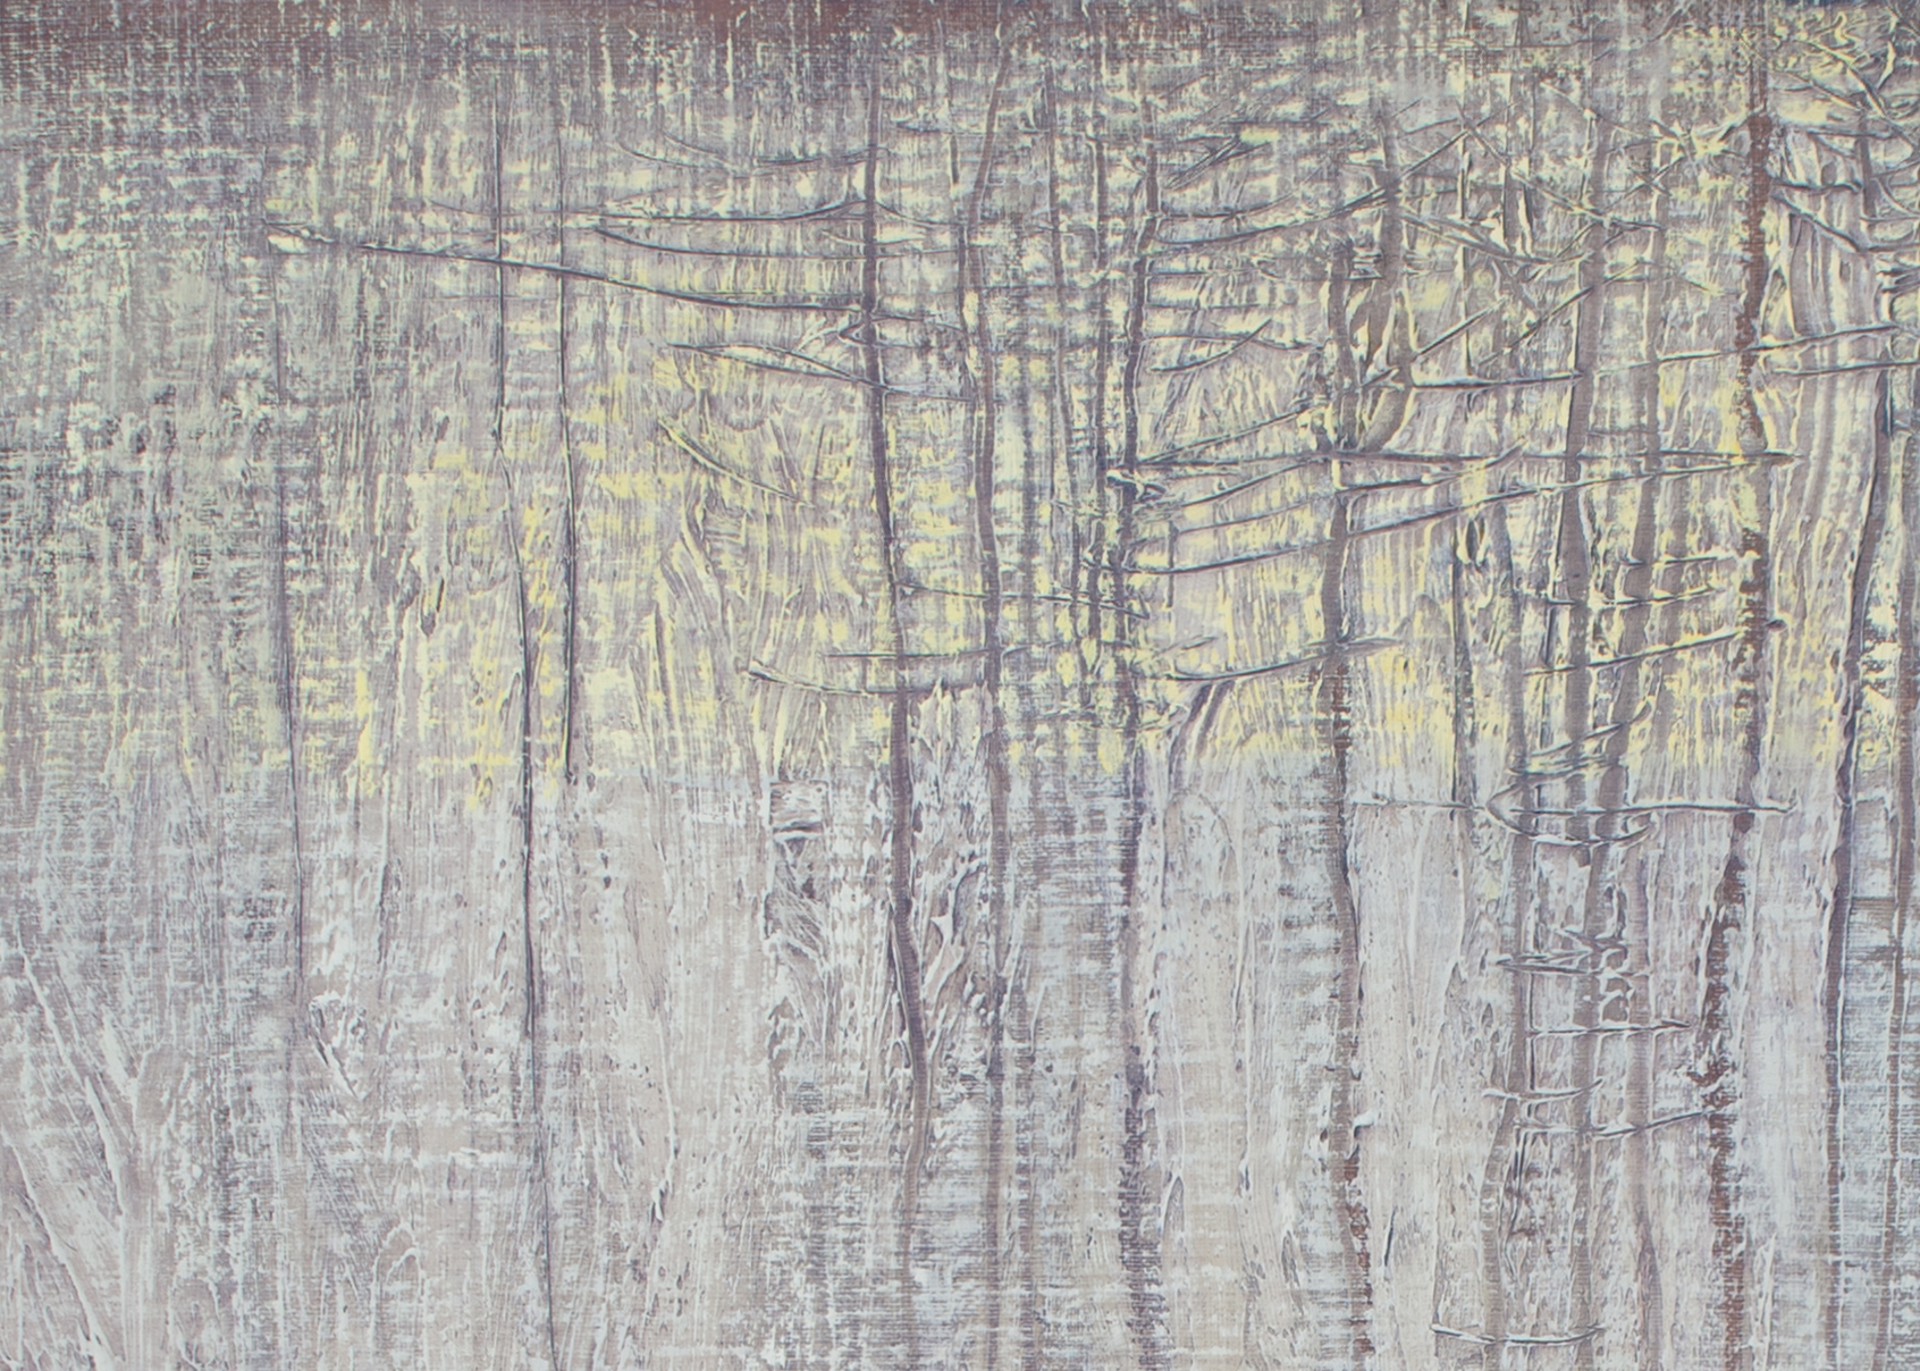 Winter Forest Textures by David Grossmann